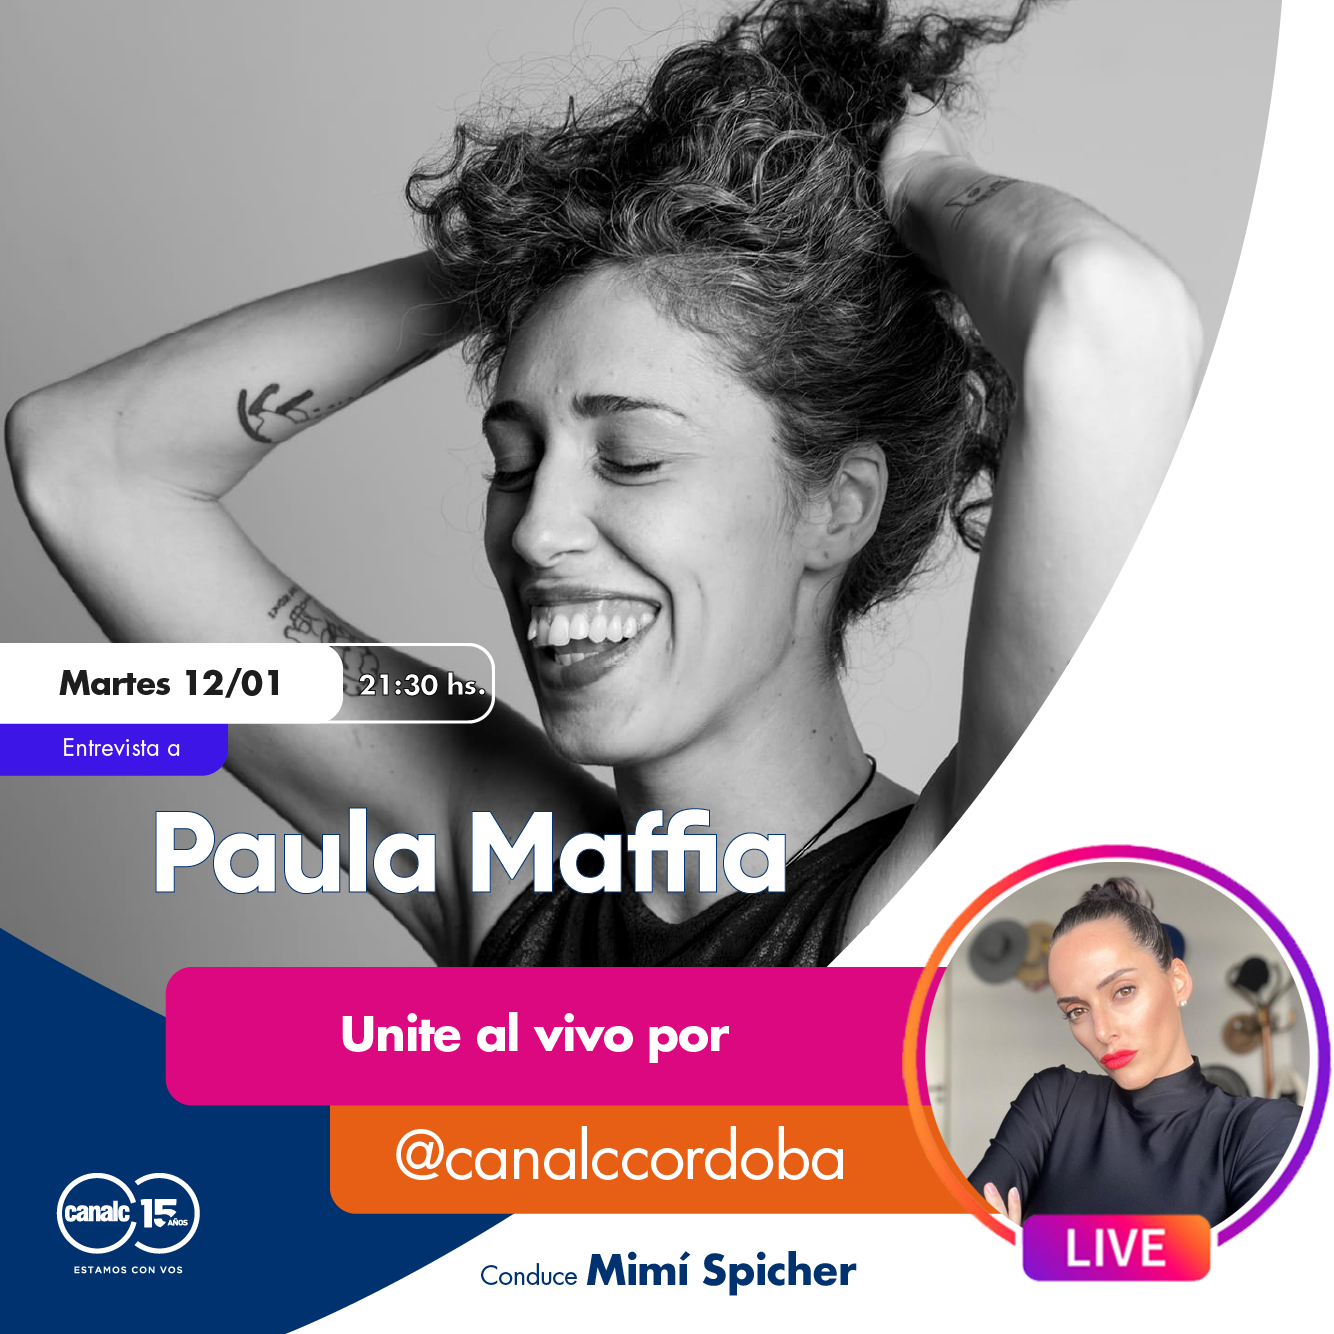 Prendete este martes al IG live de Mimí Spicher con Paula Maffia • Canal C